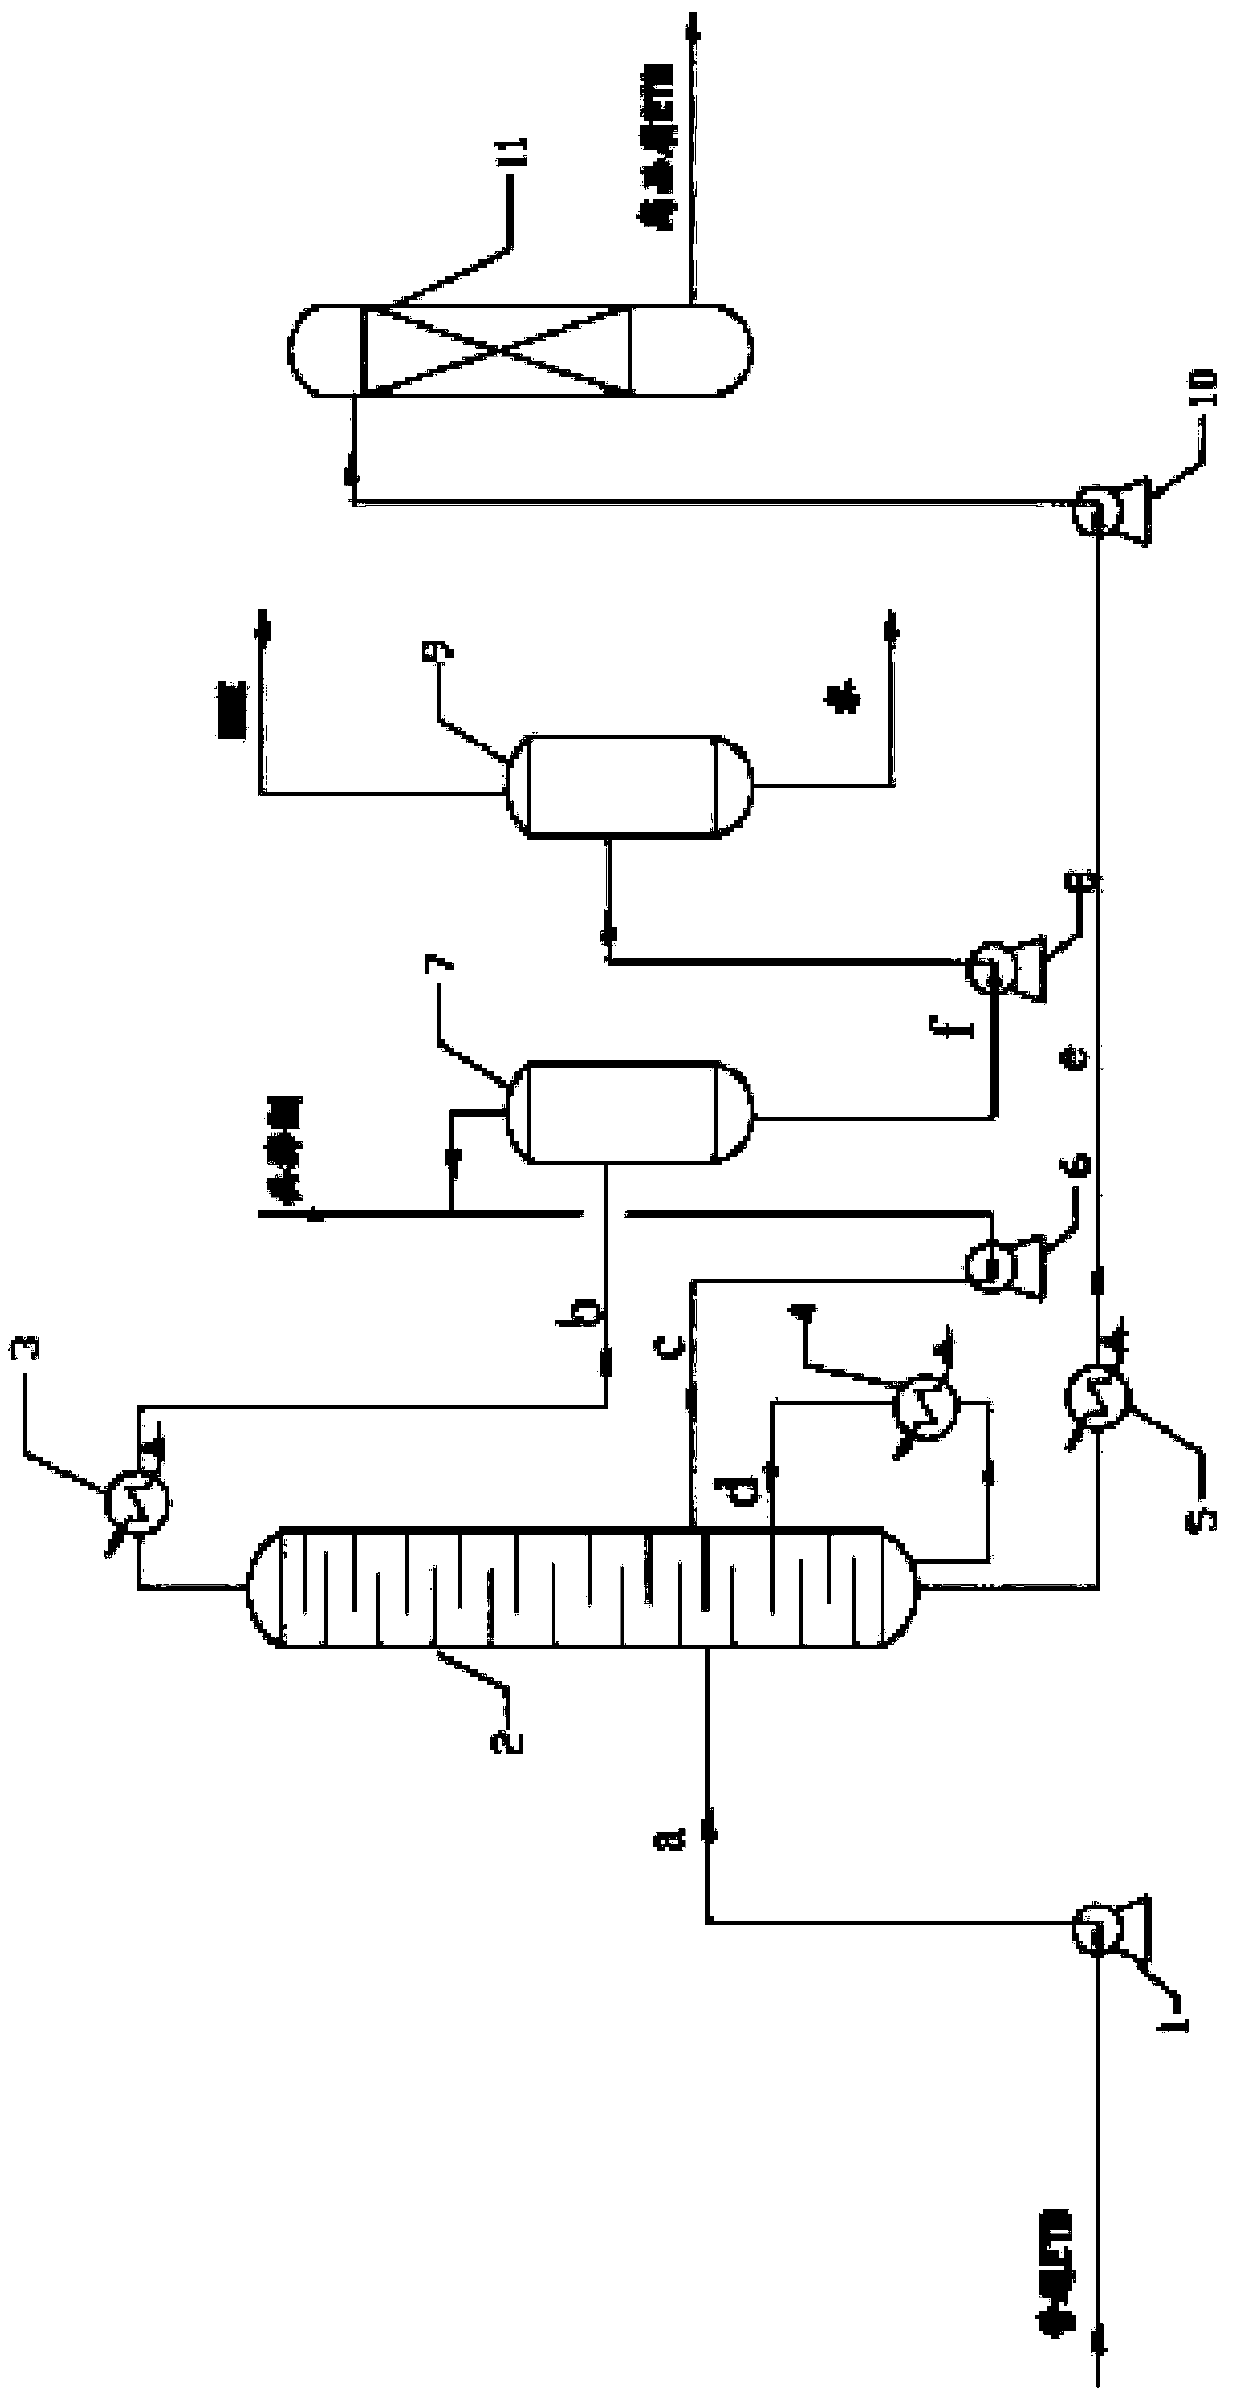 Process method for producing ethylene glycol mono-tert-butyl ether